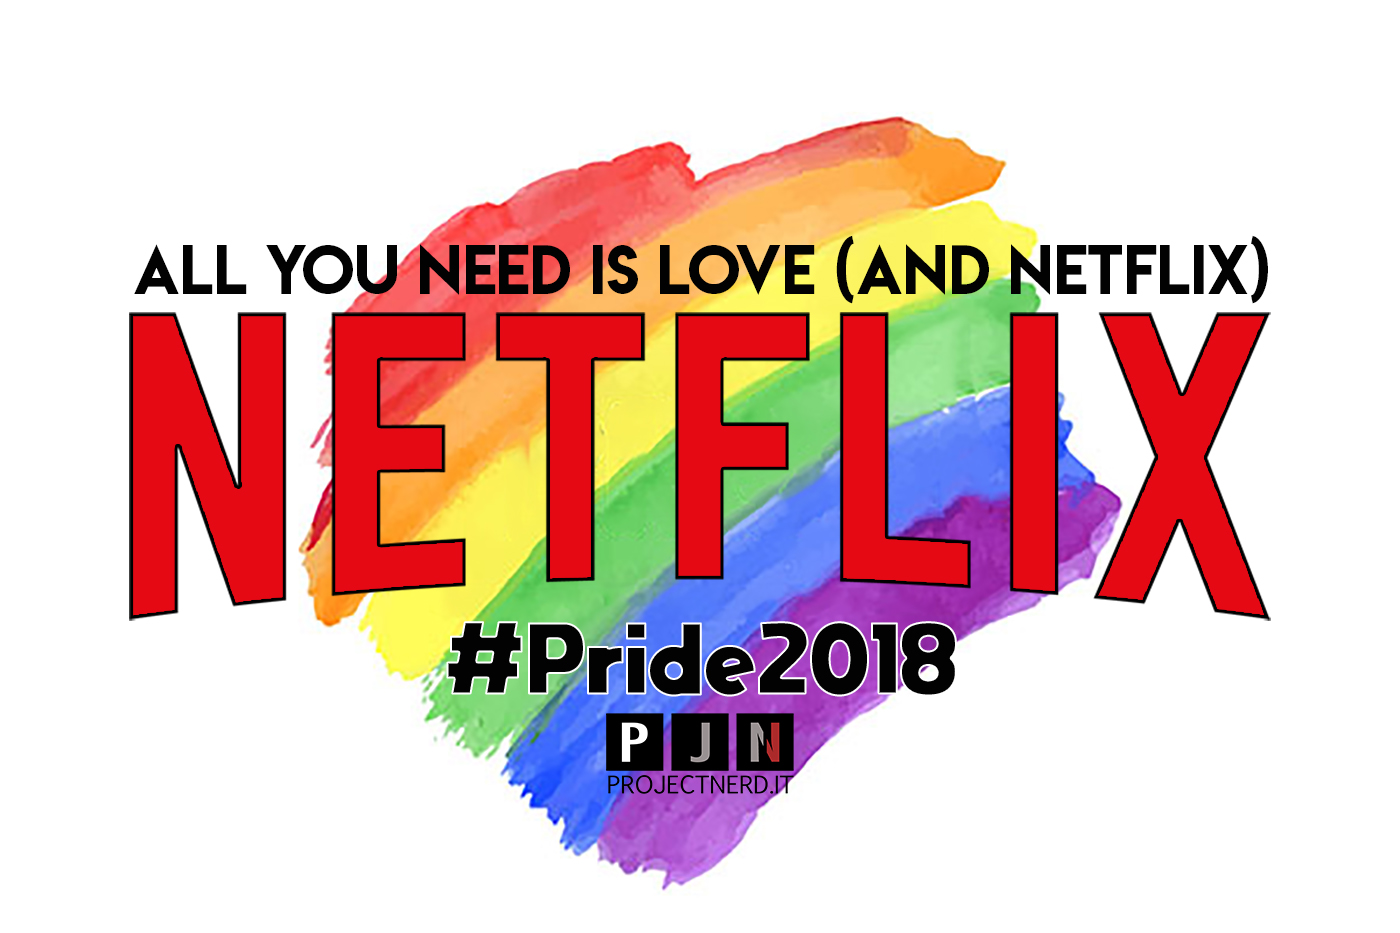 Pride 2018 projectnerd.it